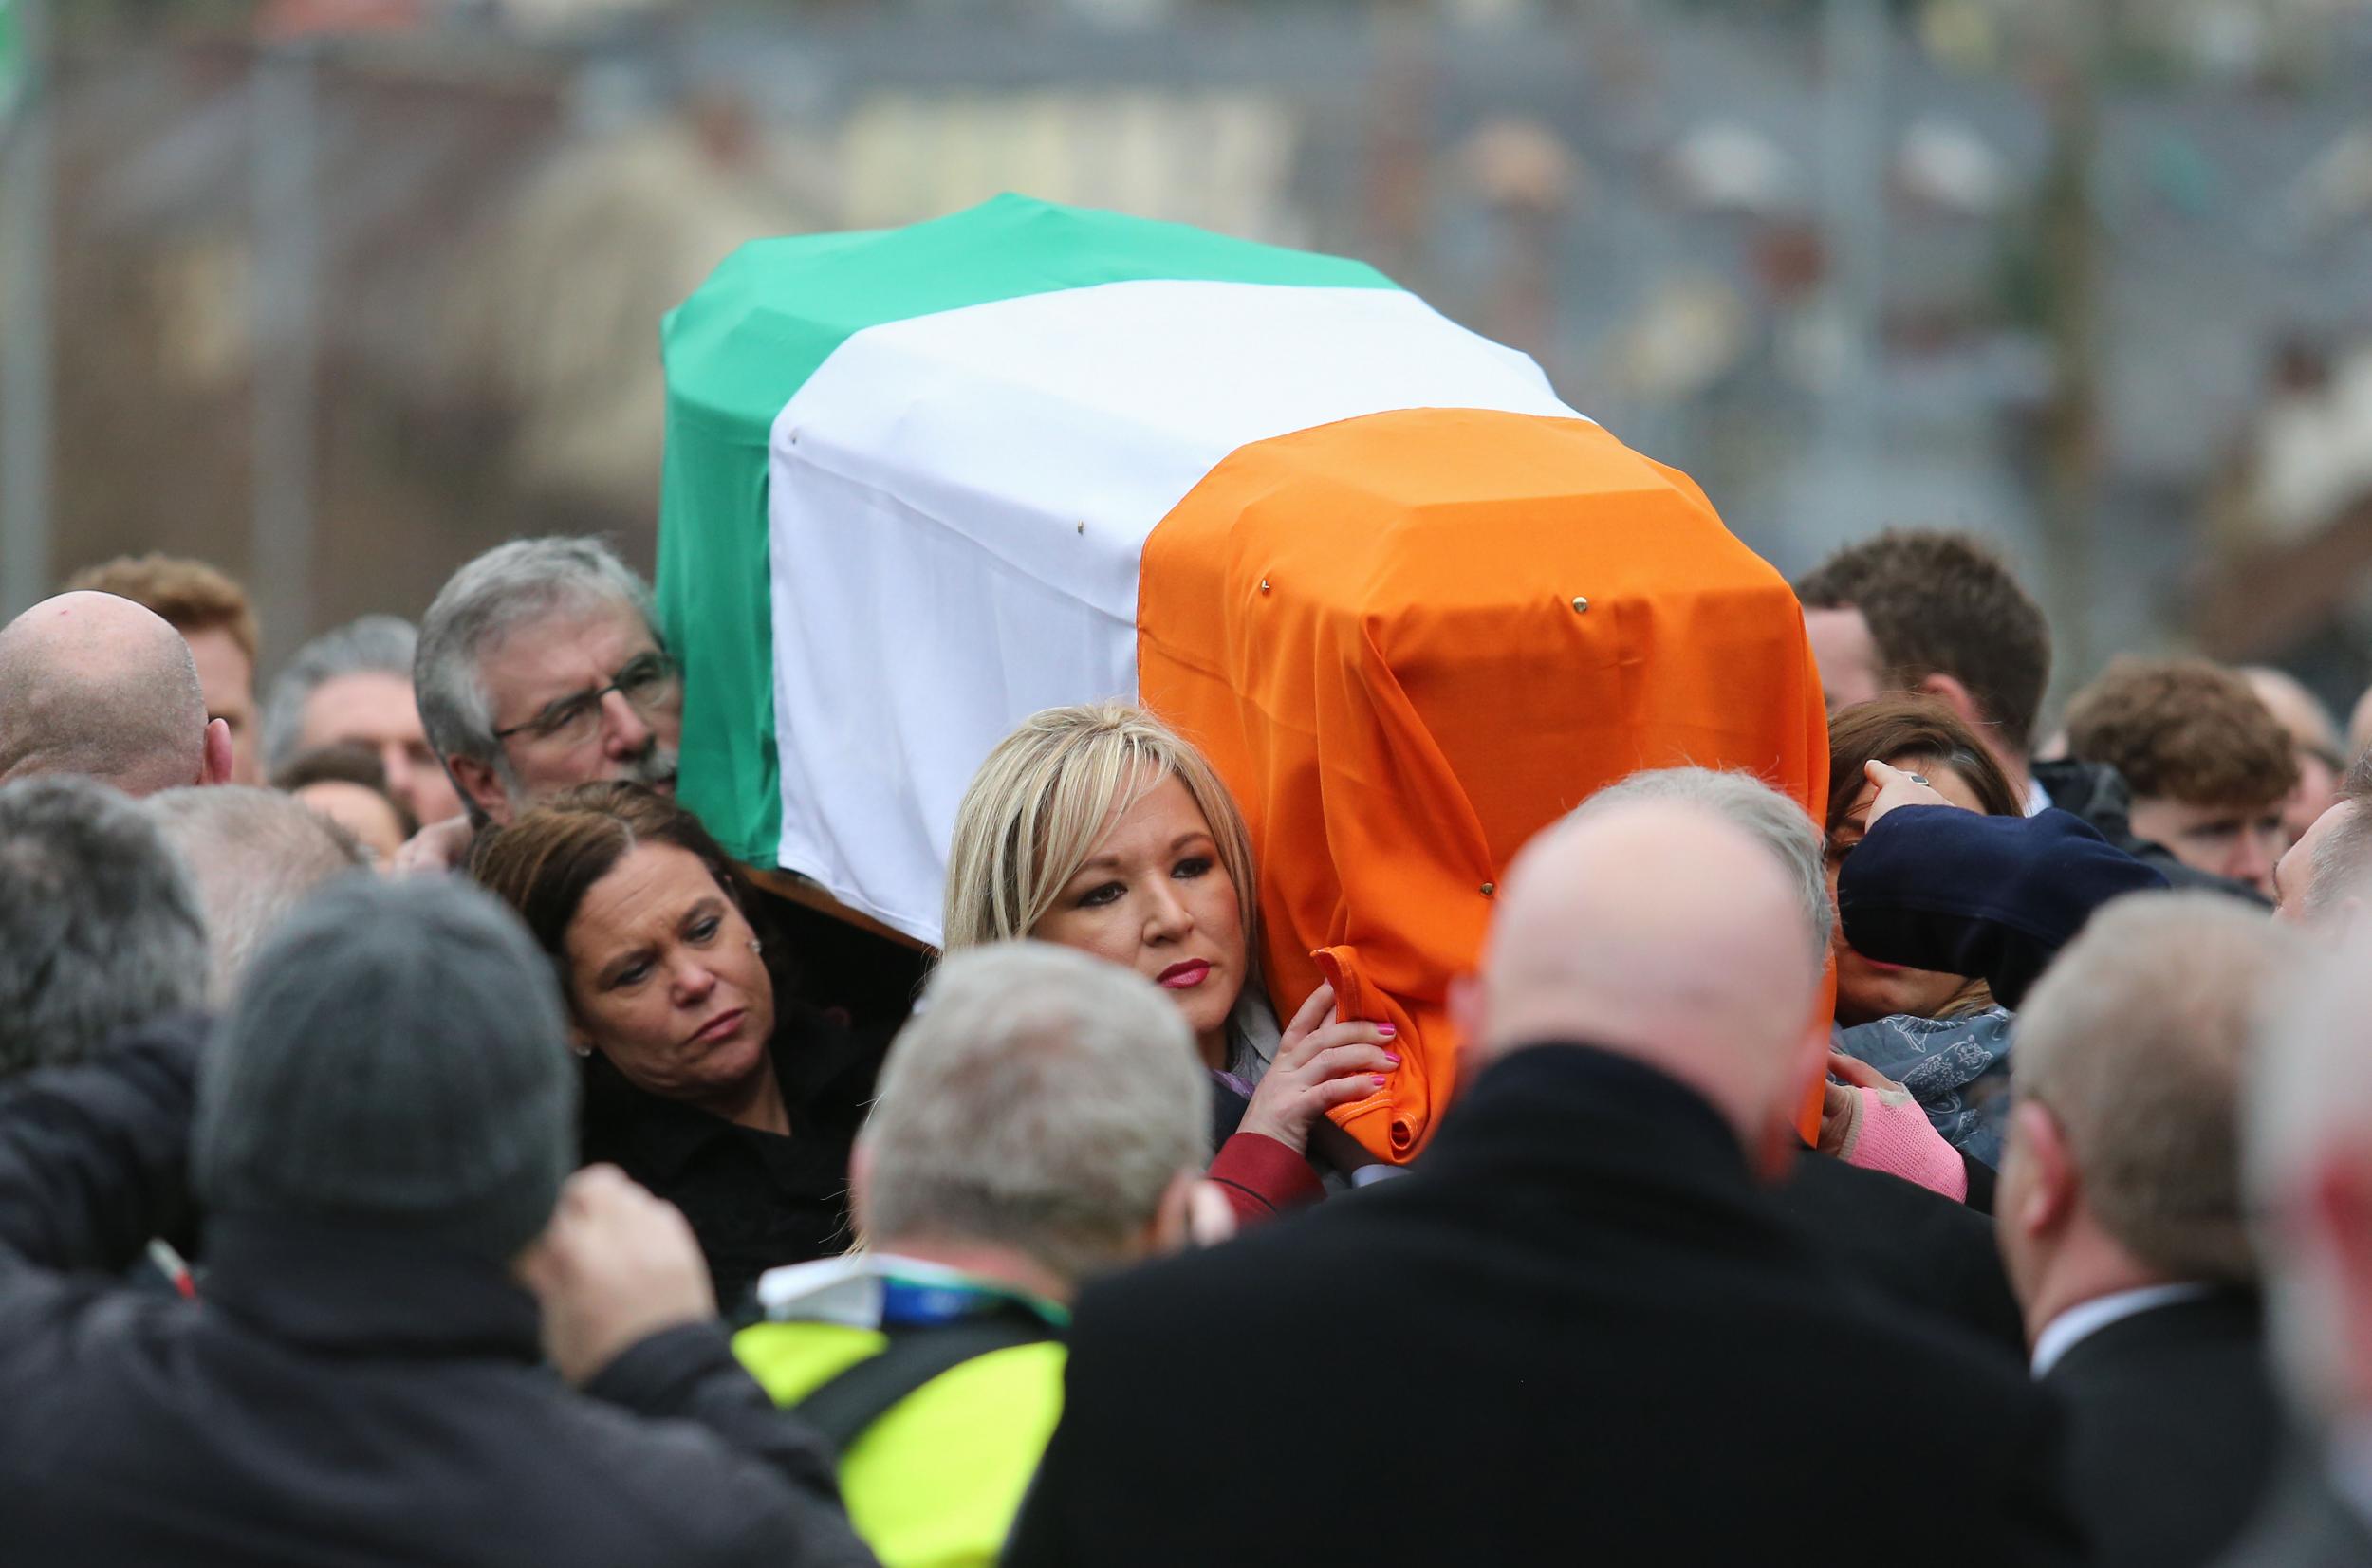 Sinn Fein’s Gerry Adams and Michelle O'Neill carrying Martin McGuinness's coffin